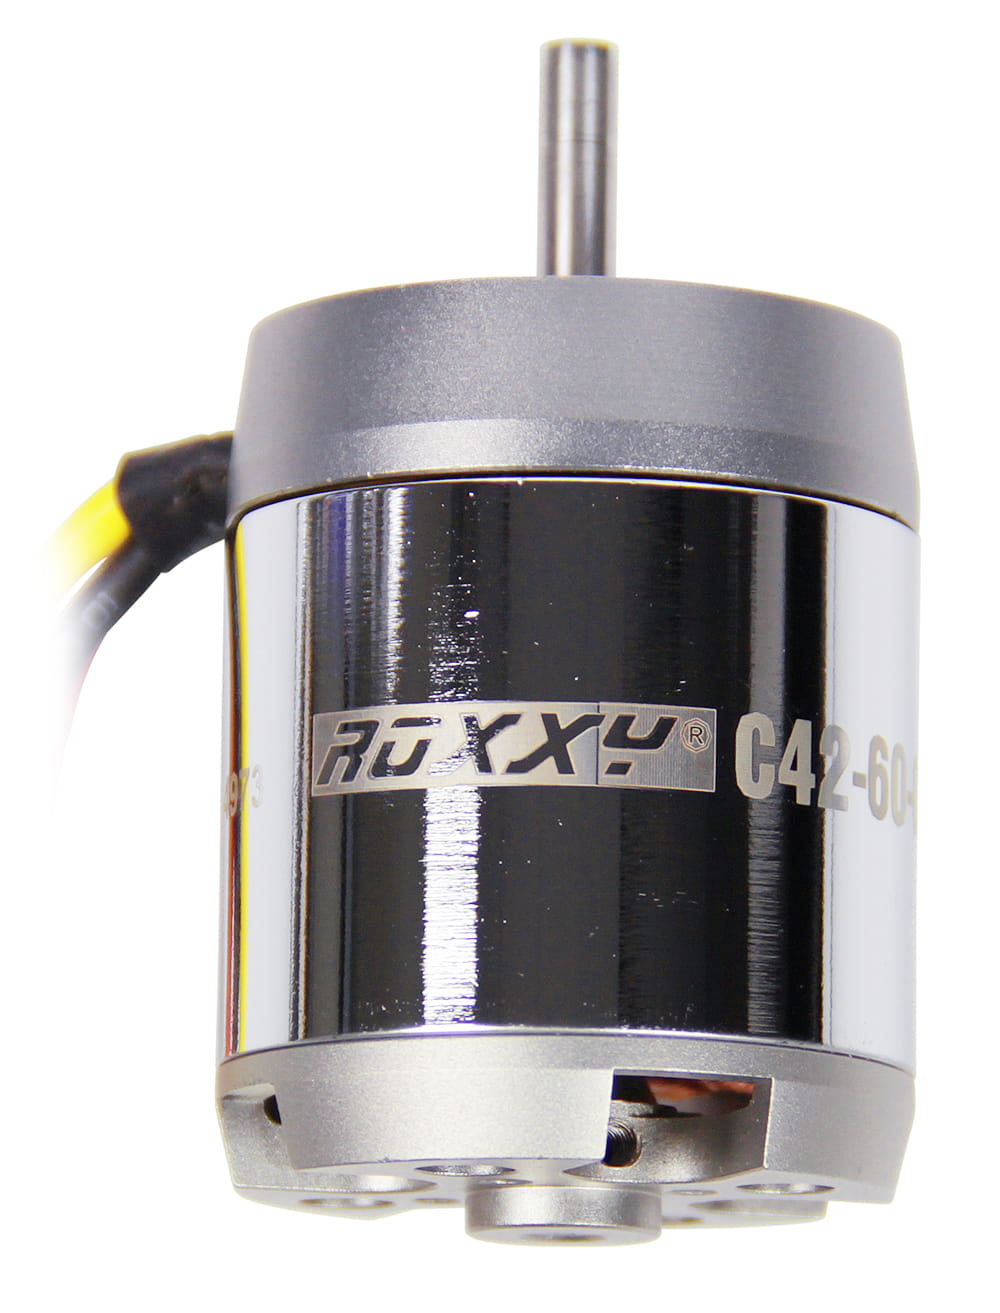 Multiplex ROXXY Brushless Motor BL Outrunner C42-60-600kV